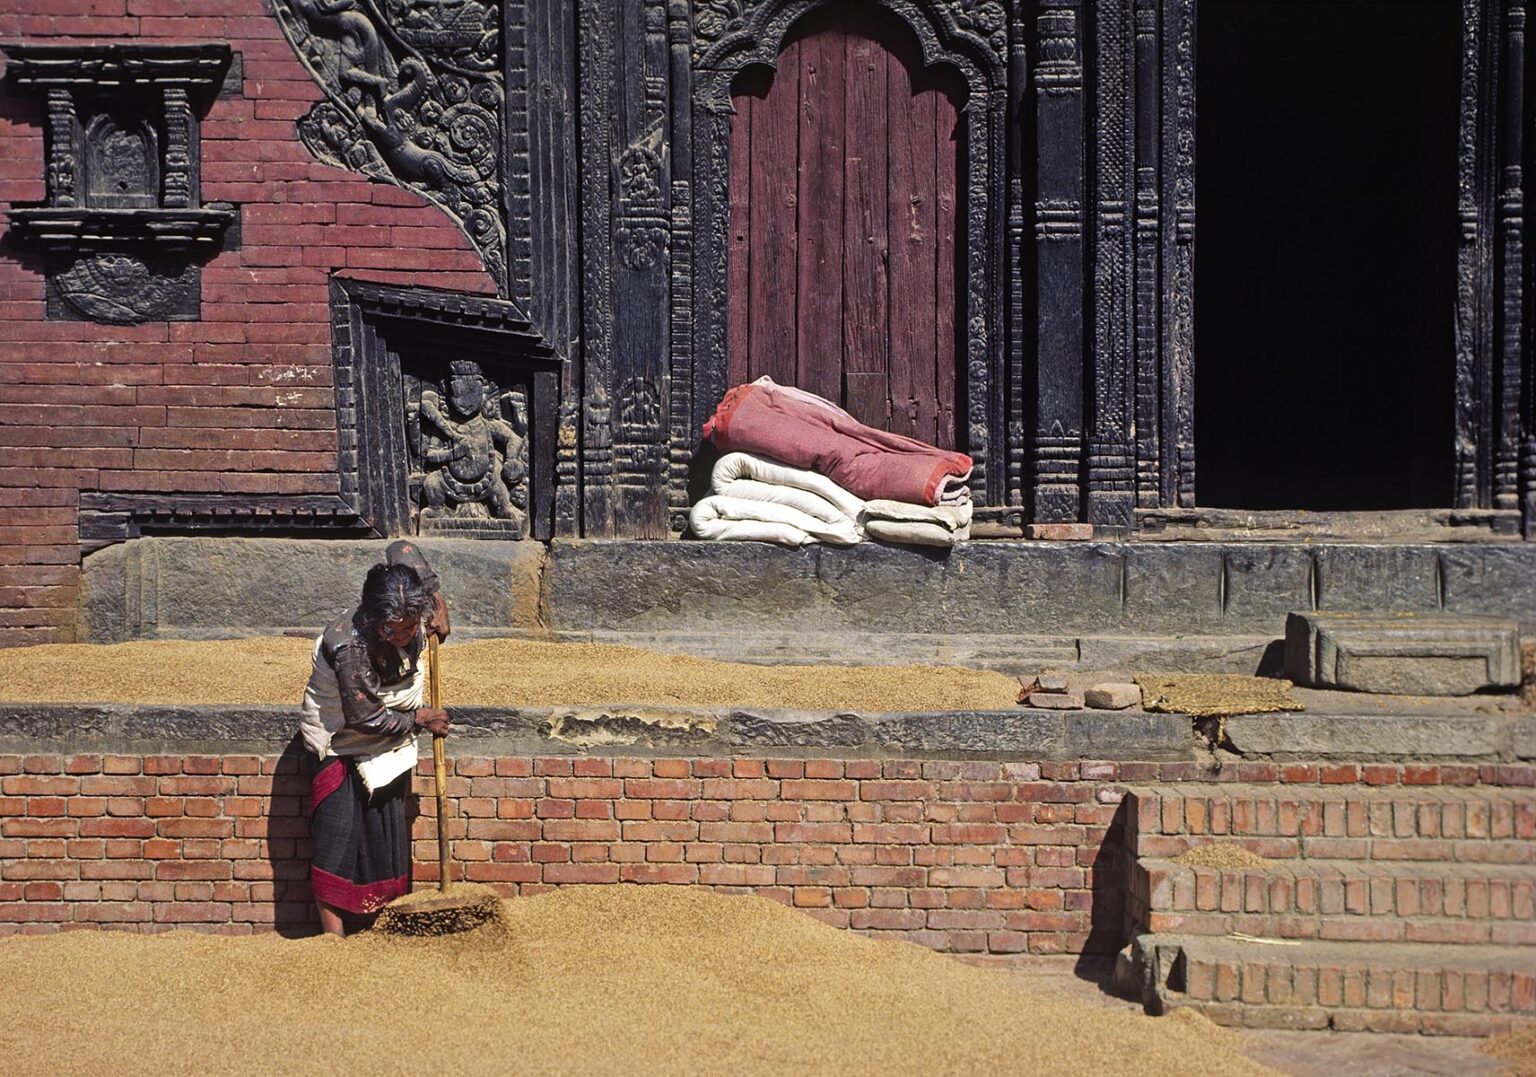 A NEPALI WOMAN rakes RICE drying in a courtyard - KATHAMANDU, NEPAL